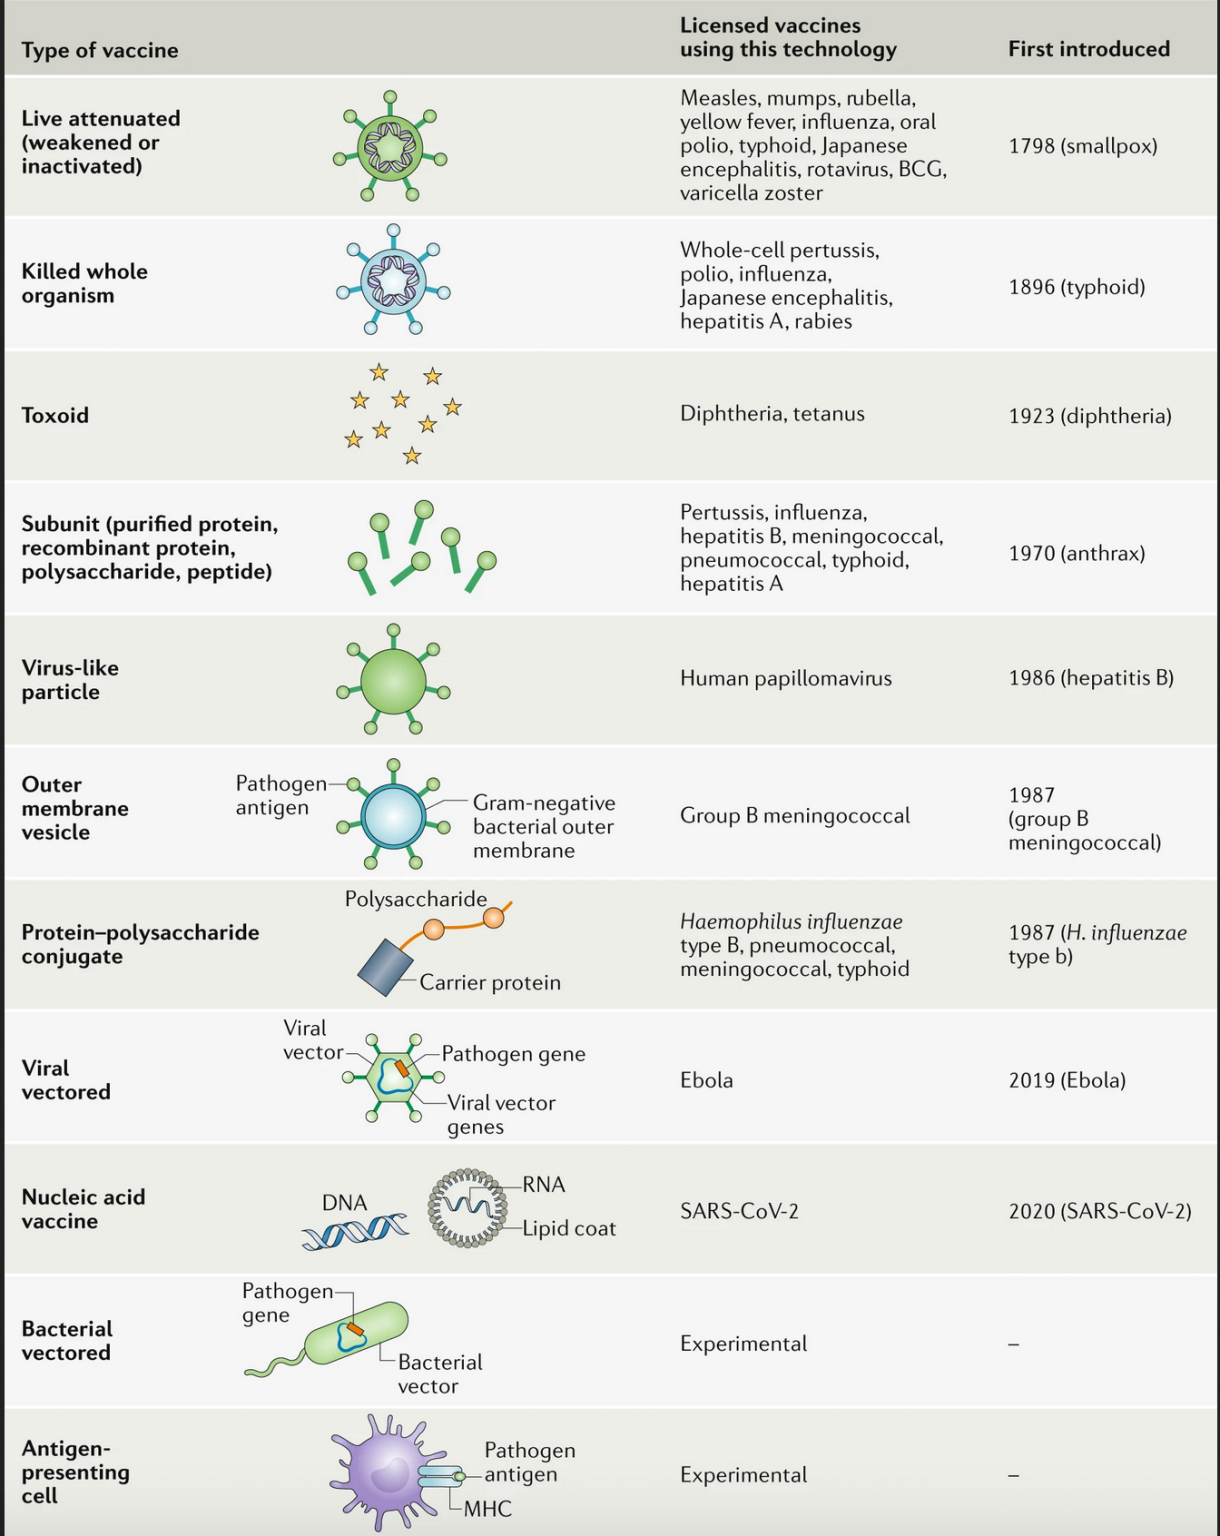 Figura 1: Guía esquemática de diferentes tipos de vacunas contra patógenos con su año de introducción. Tomada de: Nature Reviews Immunology, Deciembre 2020.